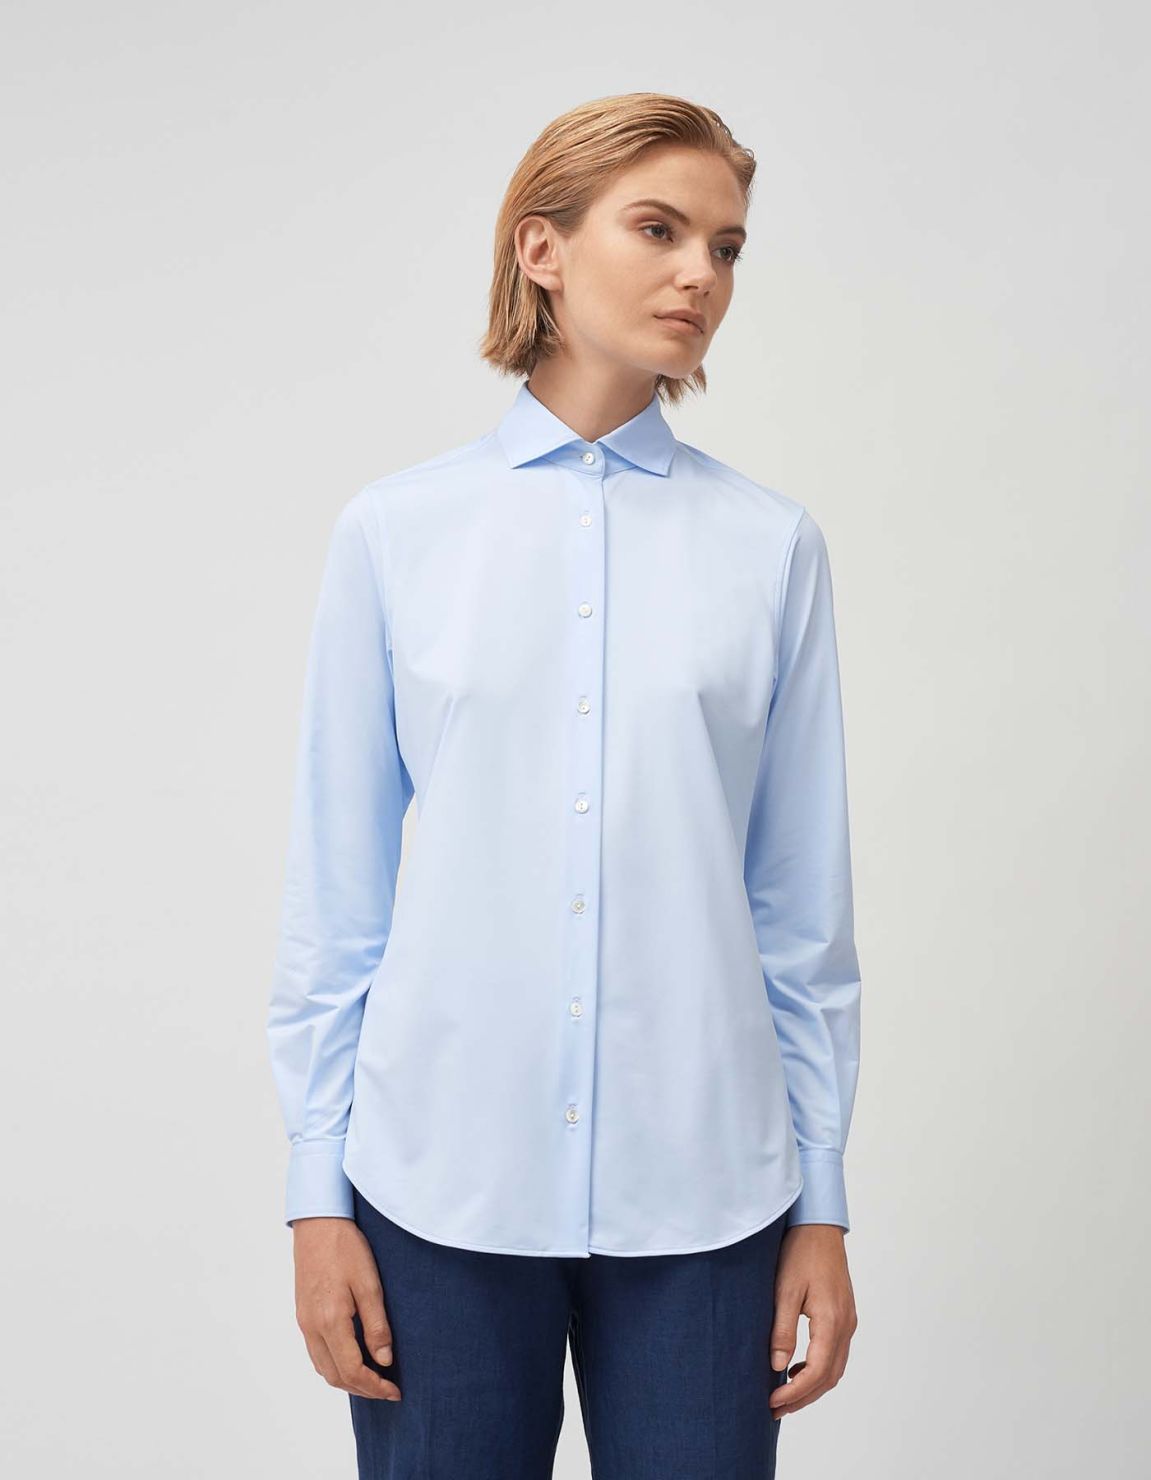 Shirt Light Blue Oxford Regular Fit 4